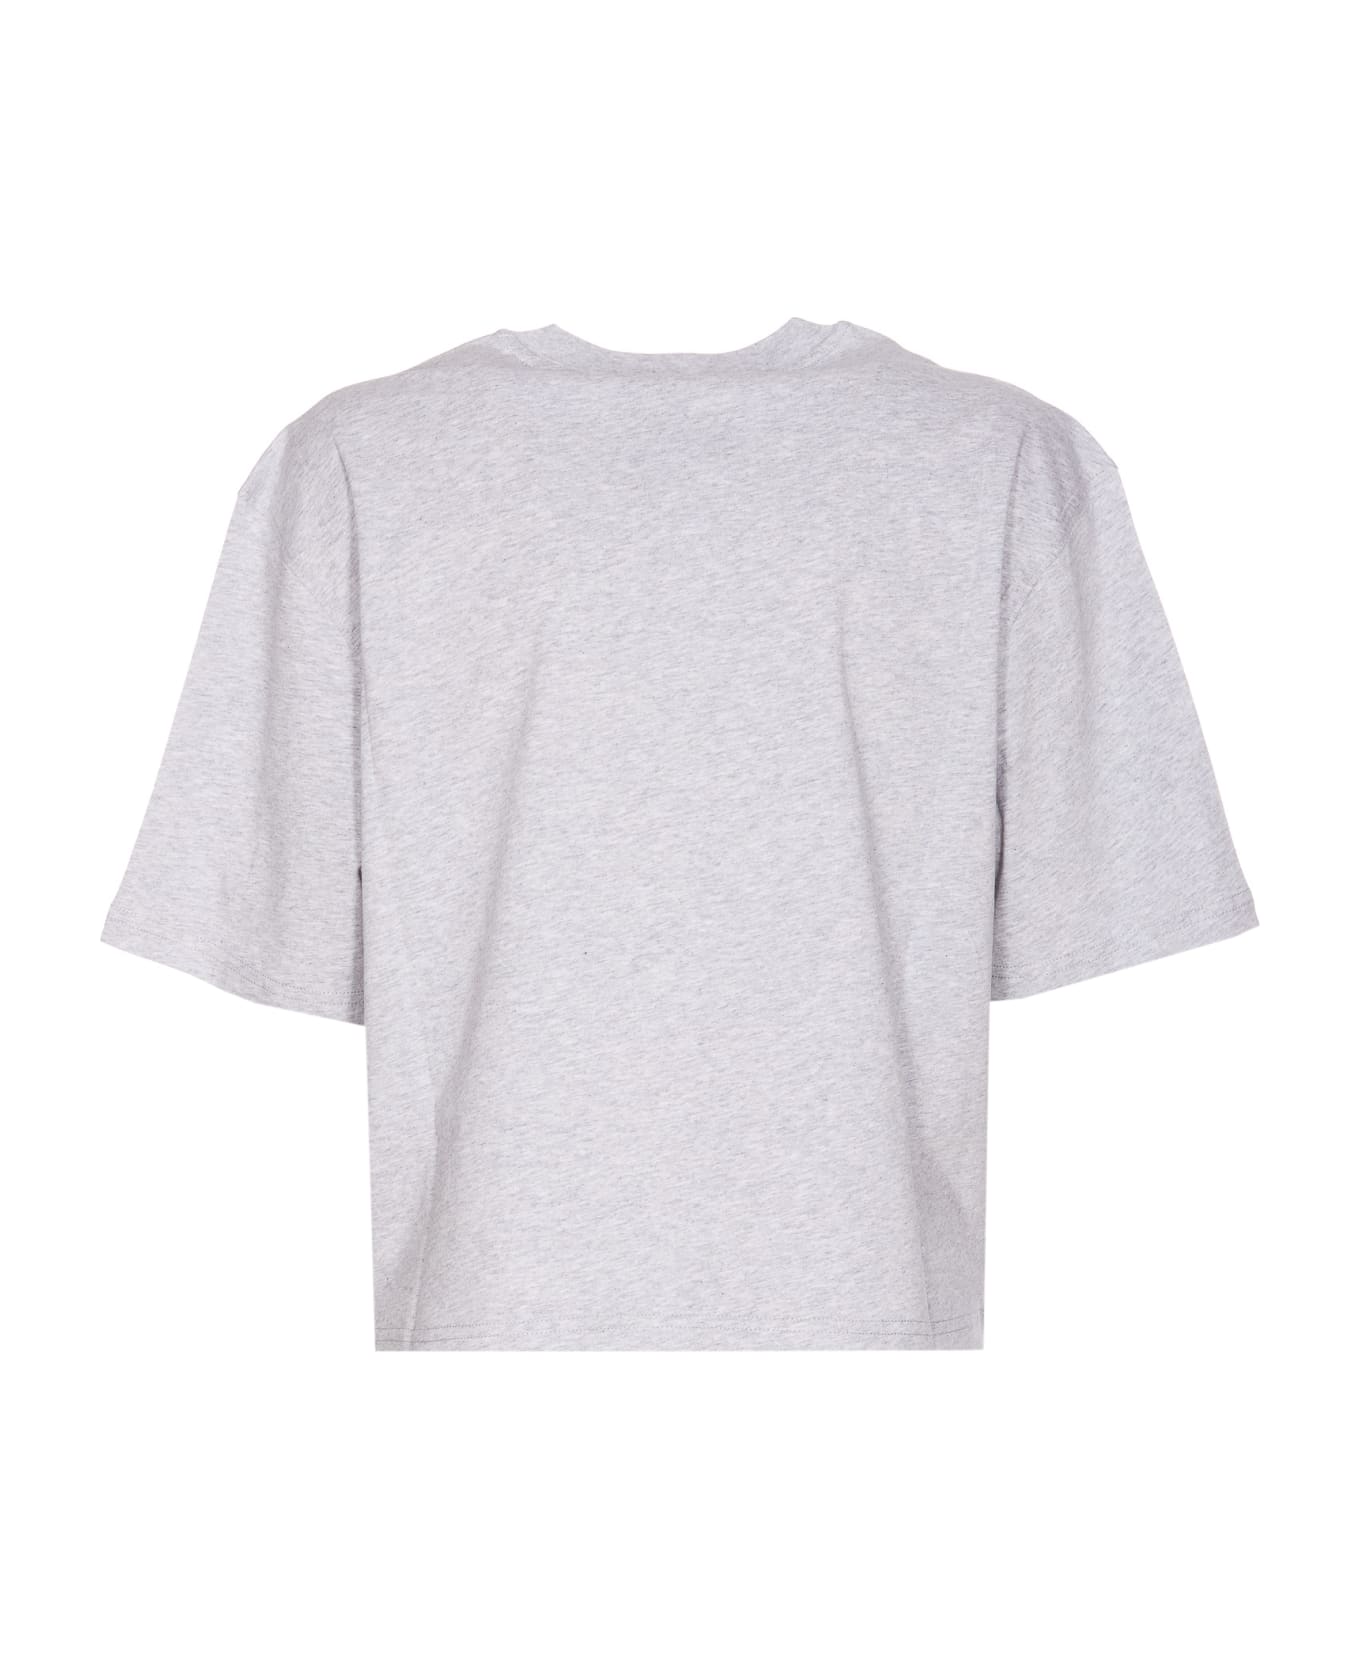 Moschino Drawn Teddy Bear T-shirt - Grey